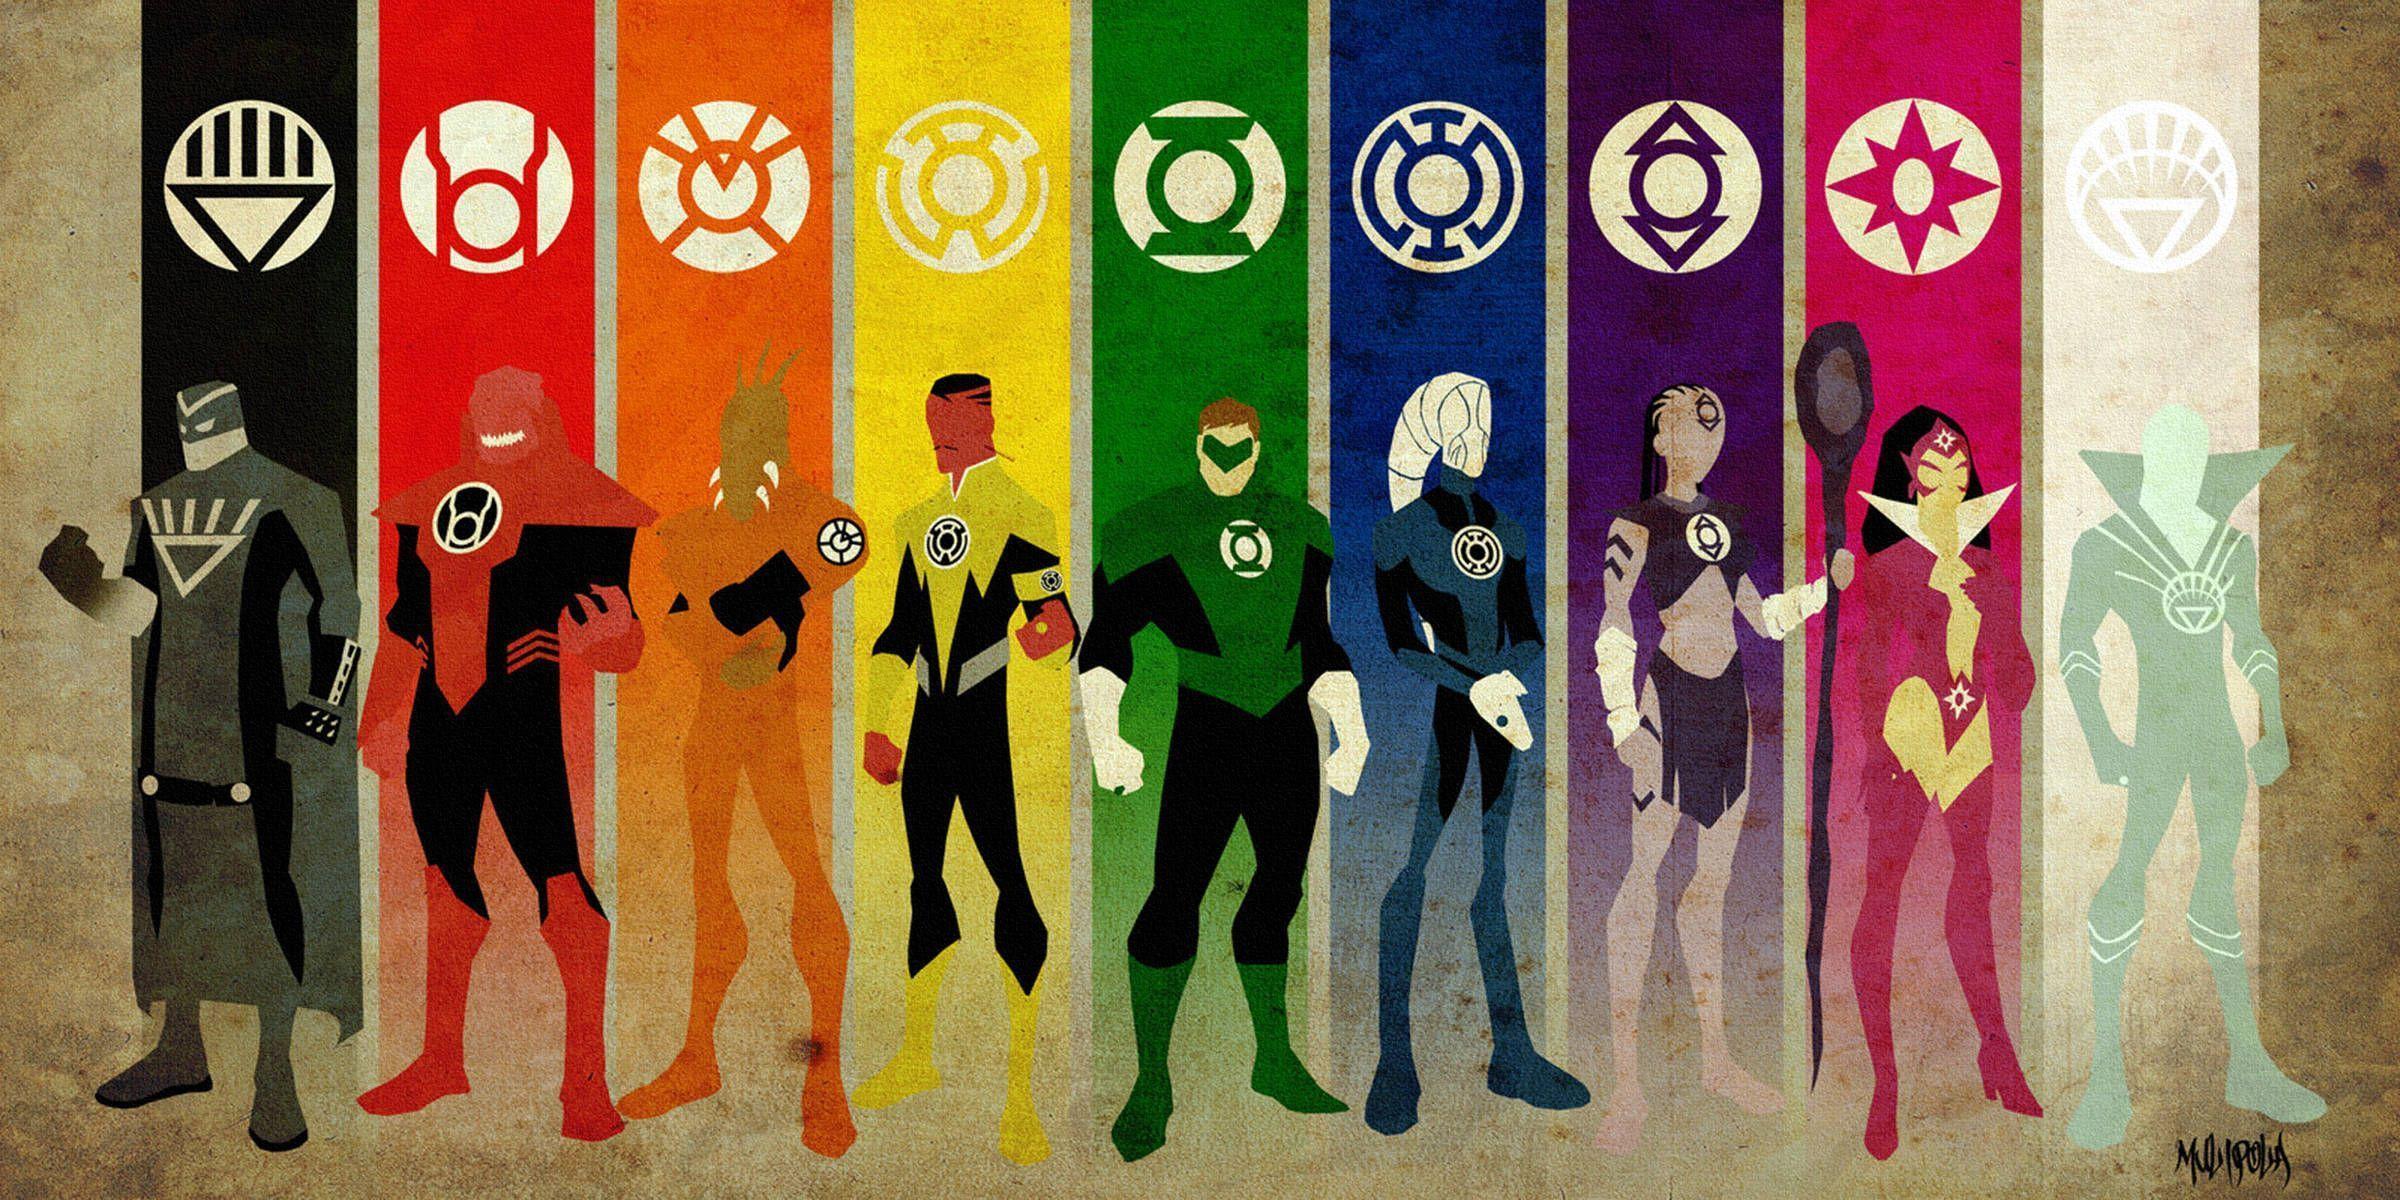 Green Lantern × Wallpapers